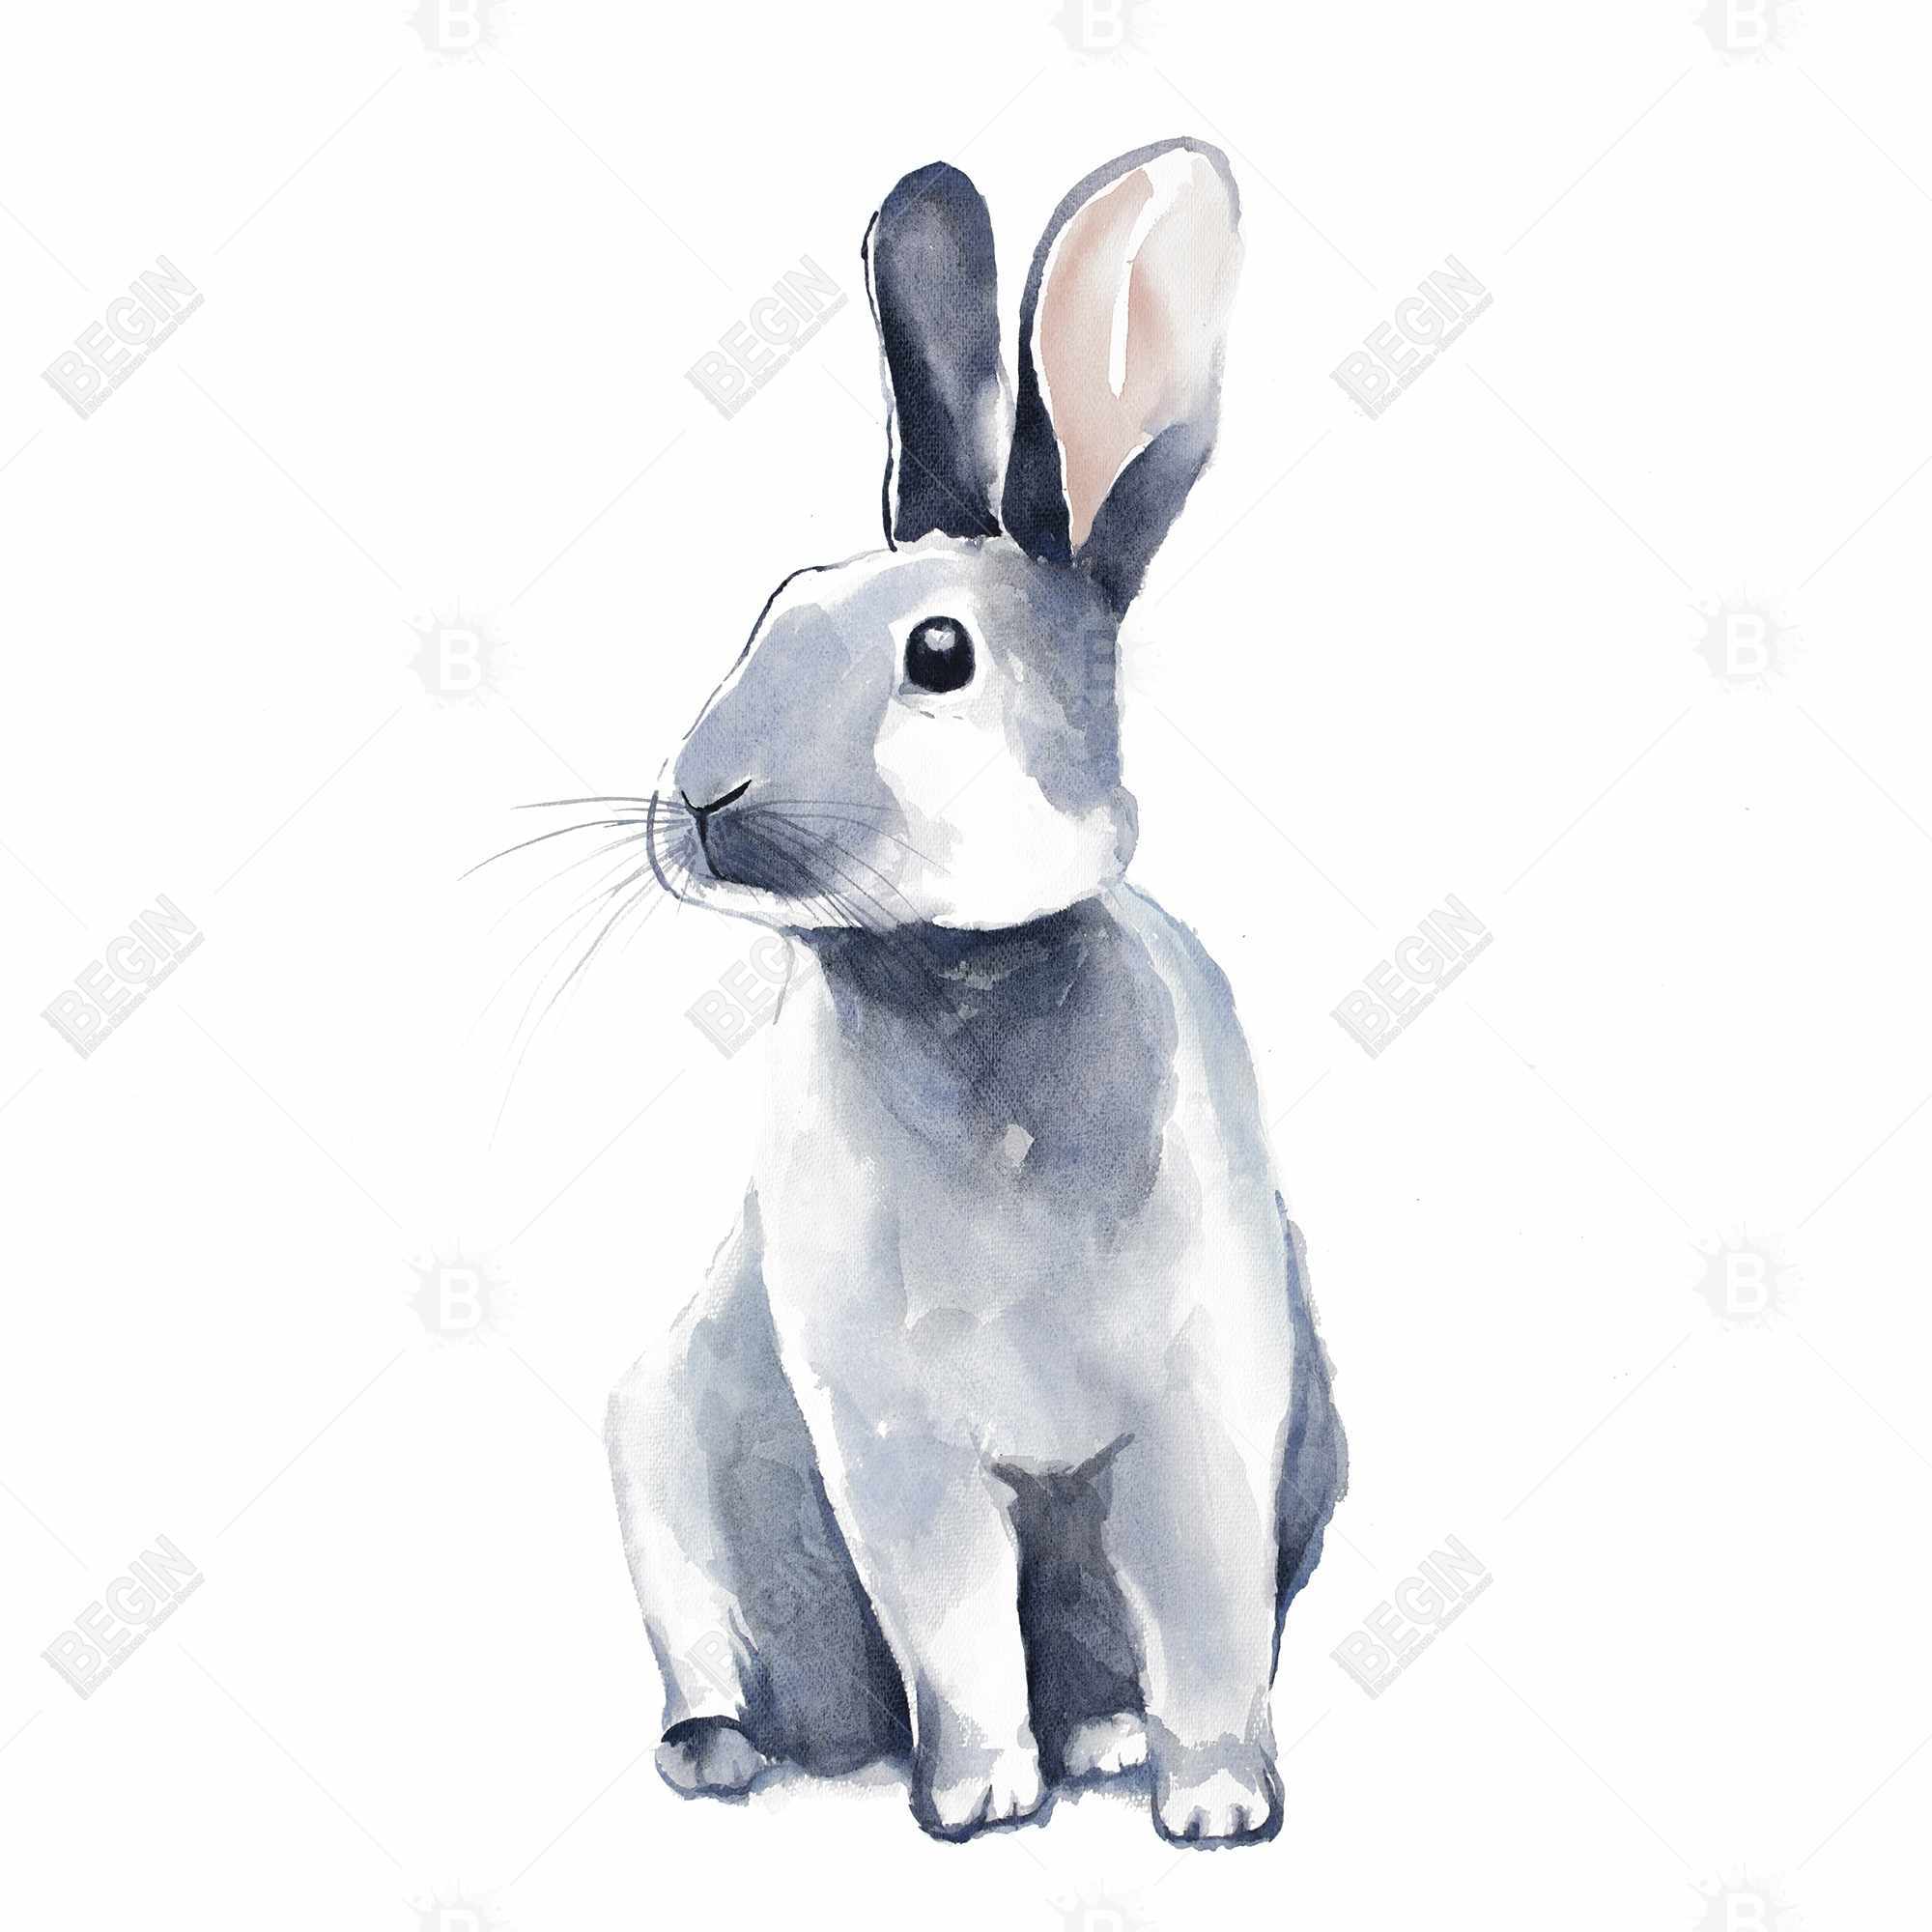 Gray curious rabbit